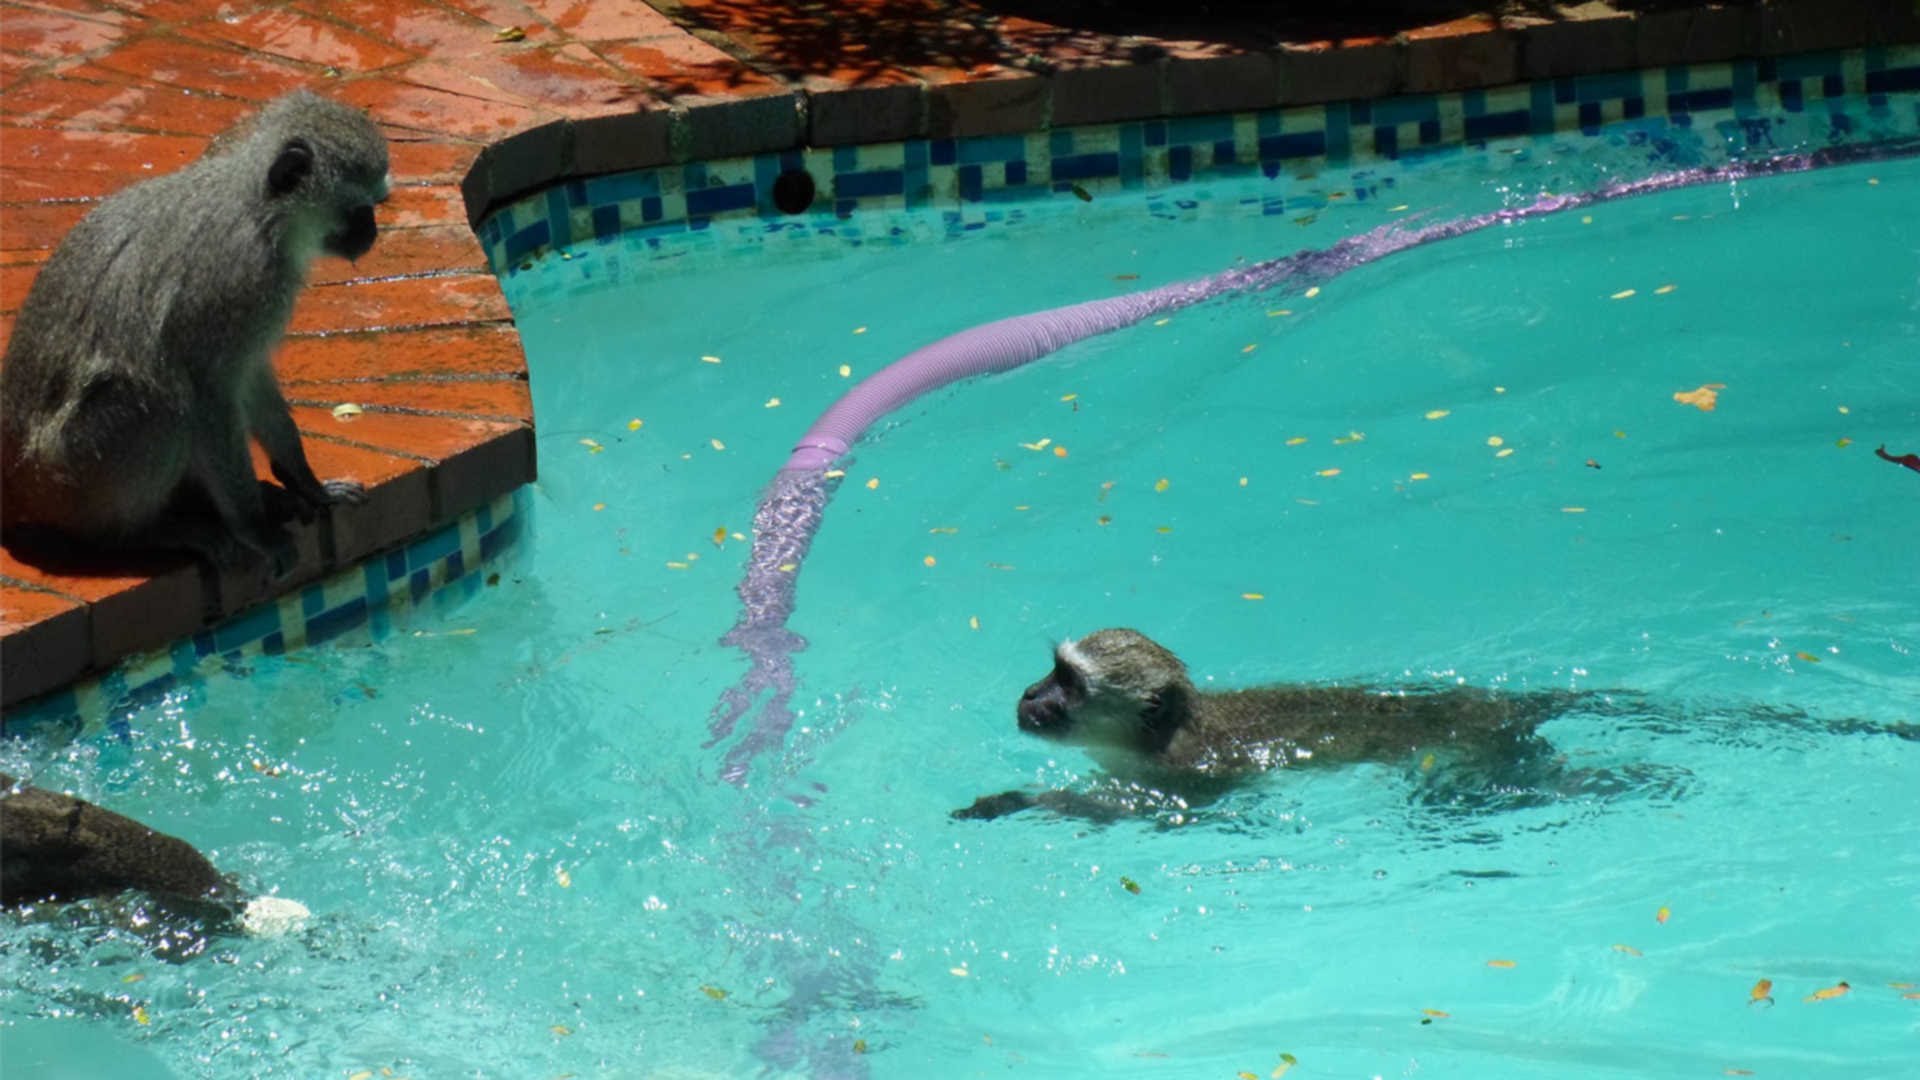 Шимпанзе плавает. Обезьяна в бассейне. Мартышки в бассейне. Обезьяны умеют плавать. Обезьянка купается в бассейне.